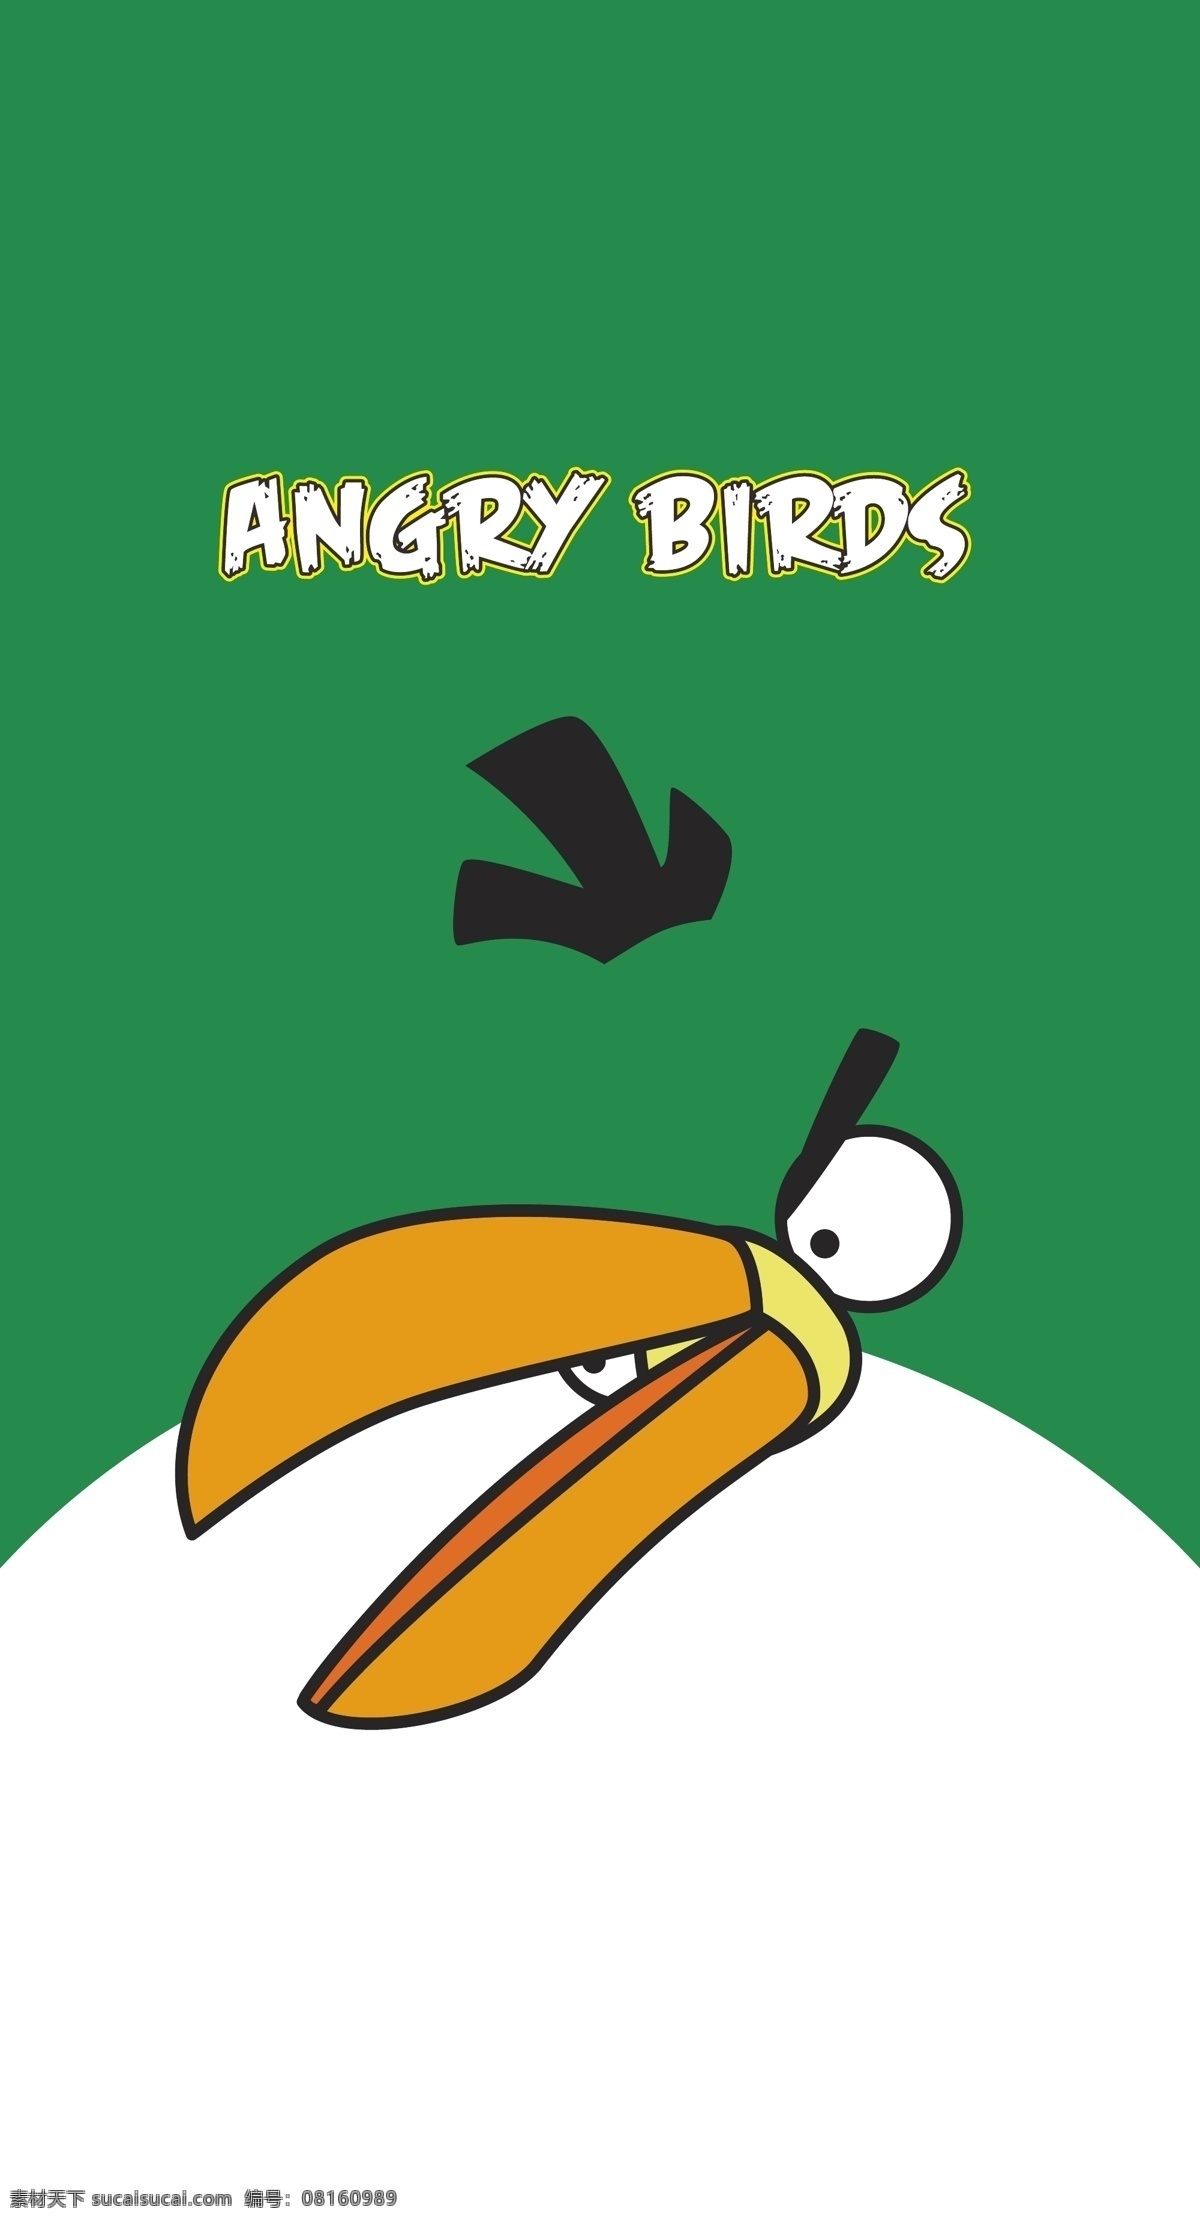 愤怒的小鸟 鸟 长嘴鸟 卡通鸟 本本封面 儿童插画 儿童图集 卡通设计 矢量